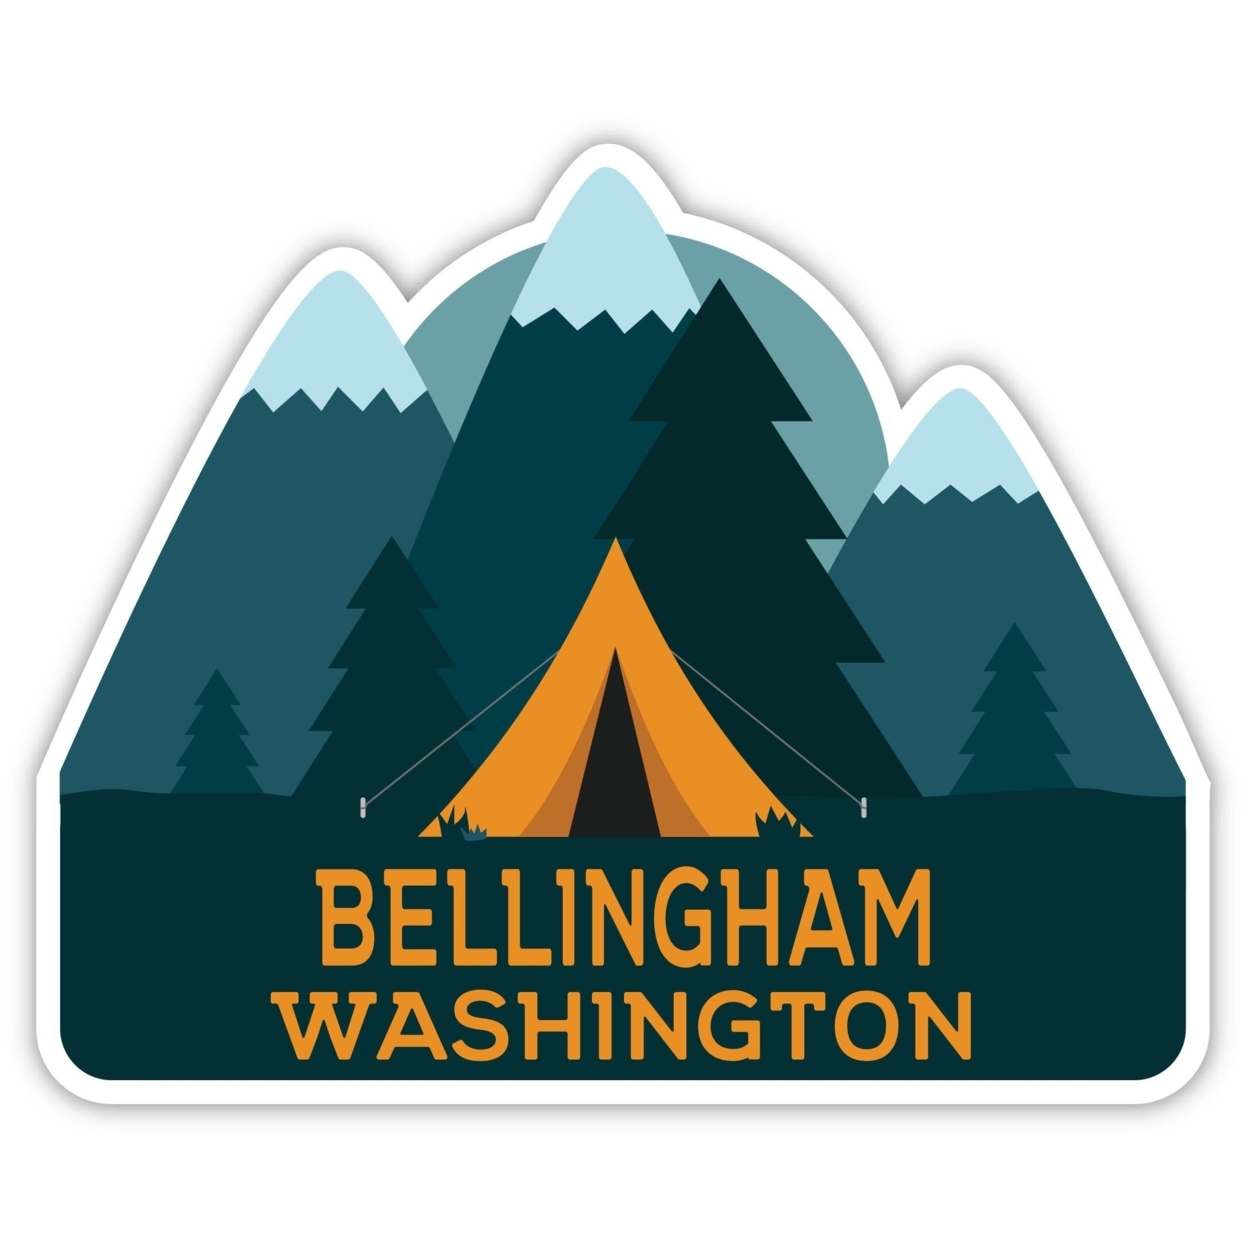 Bellingham Washington Souvenir Decorative Stickers (Choose Theme And Size) - Single Unit, 8-Inch, Adventures Awaits